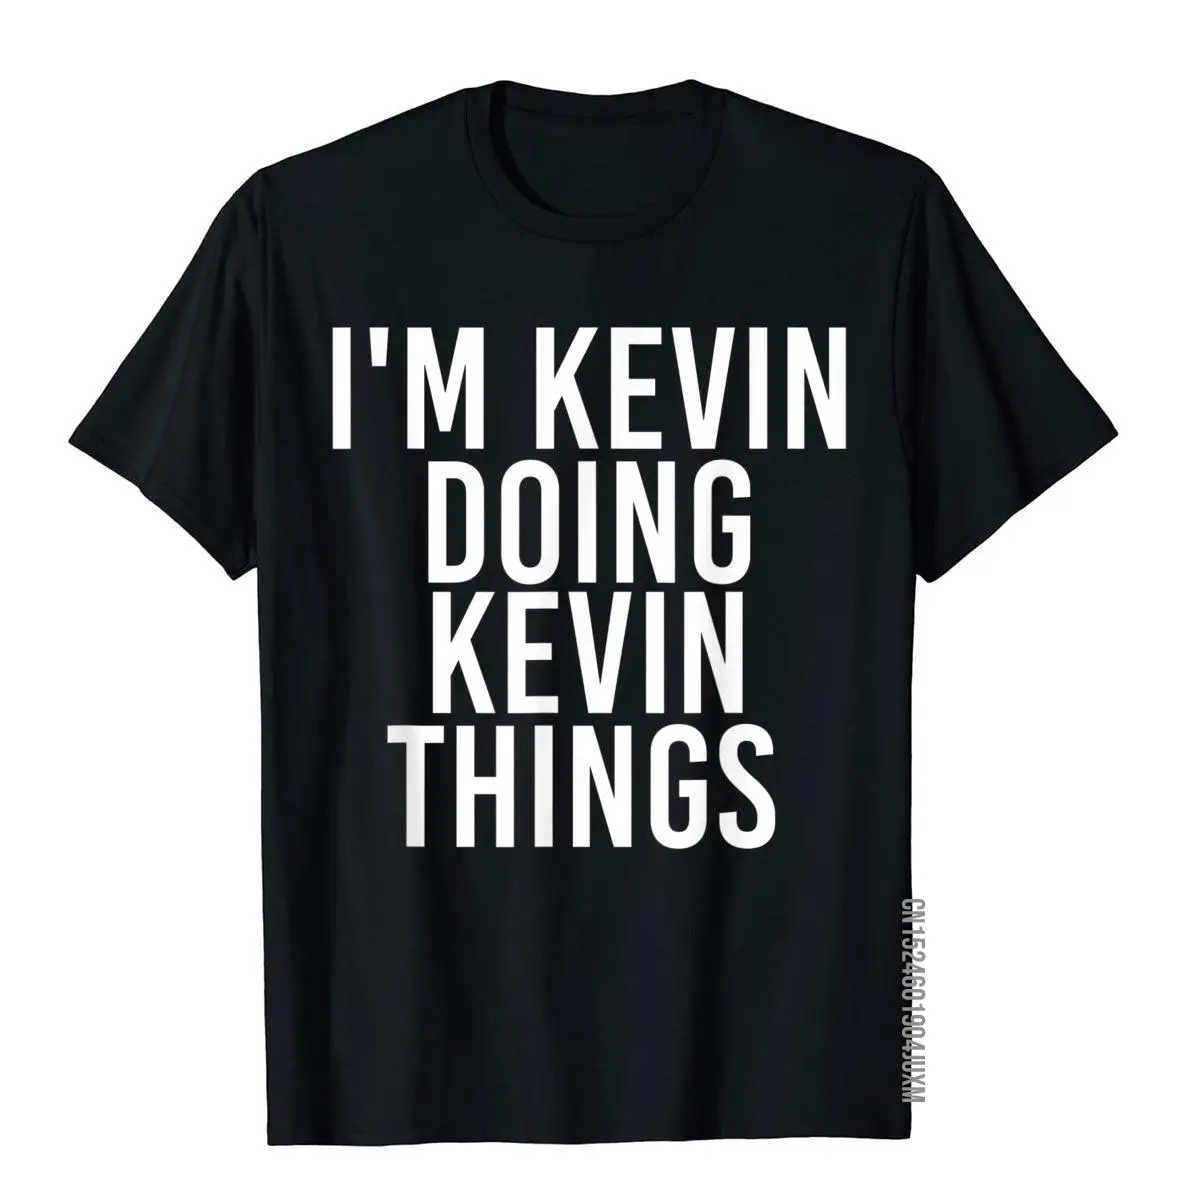 

I'm KEVIN DOING KEVIN THINGS рубашка смешной Рождественский подарок Idea футболки топы футболки забавные Geek Хлопковая мужская футболка в китайском стиле